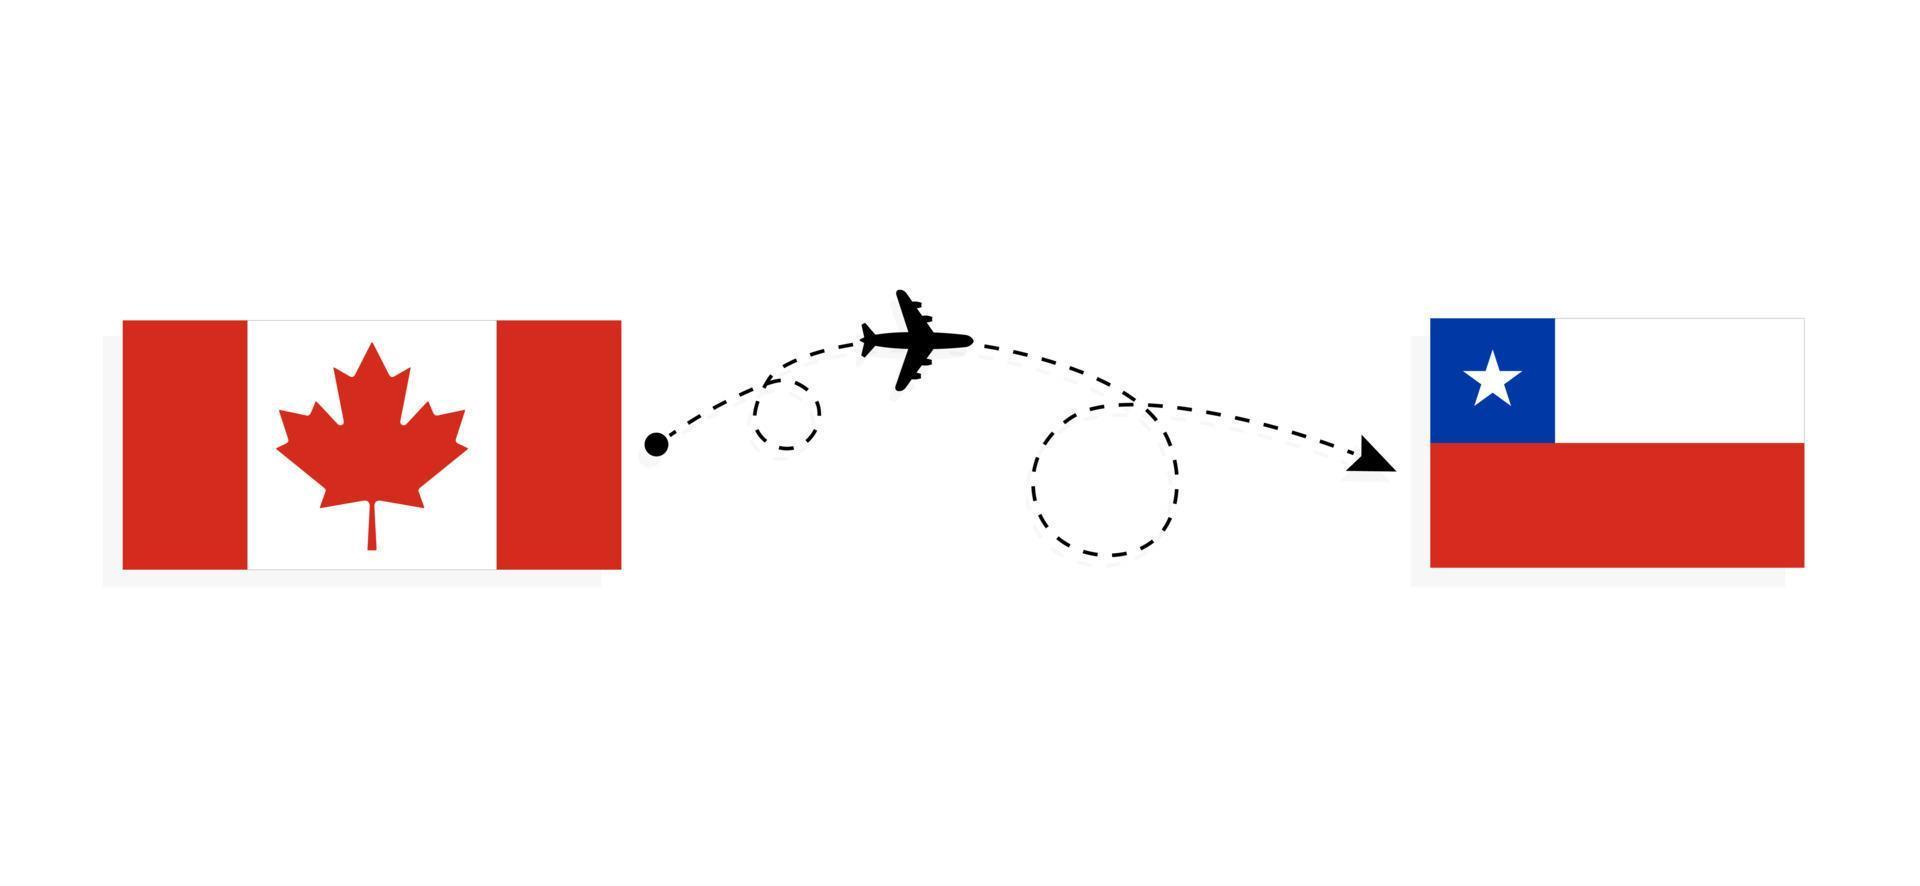 flyg och resor från Kanada till Chile med passagerarflygplan vektor